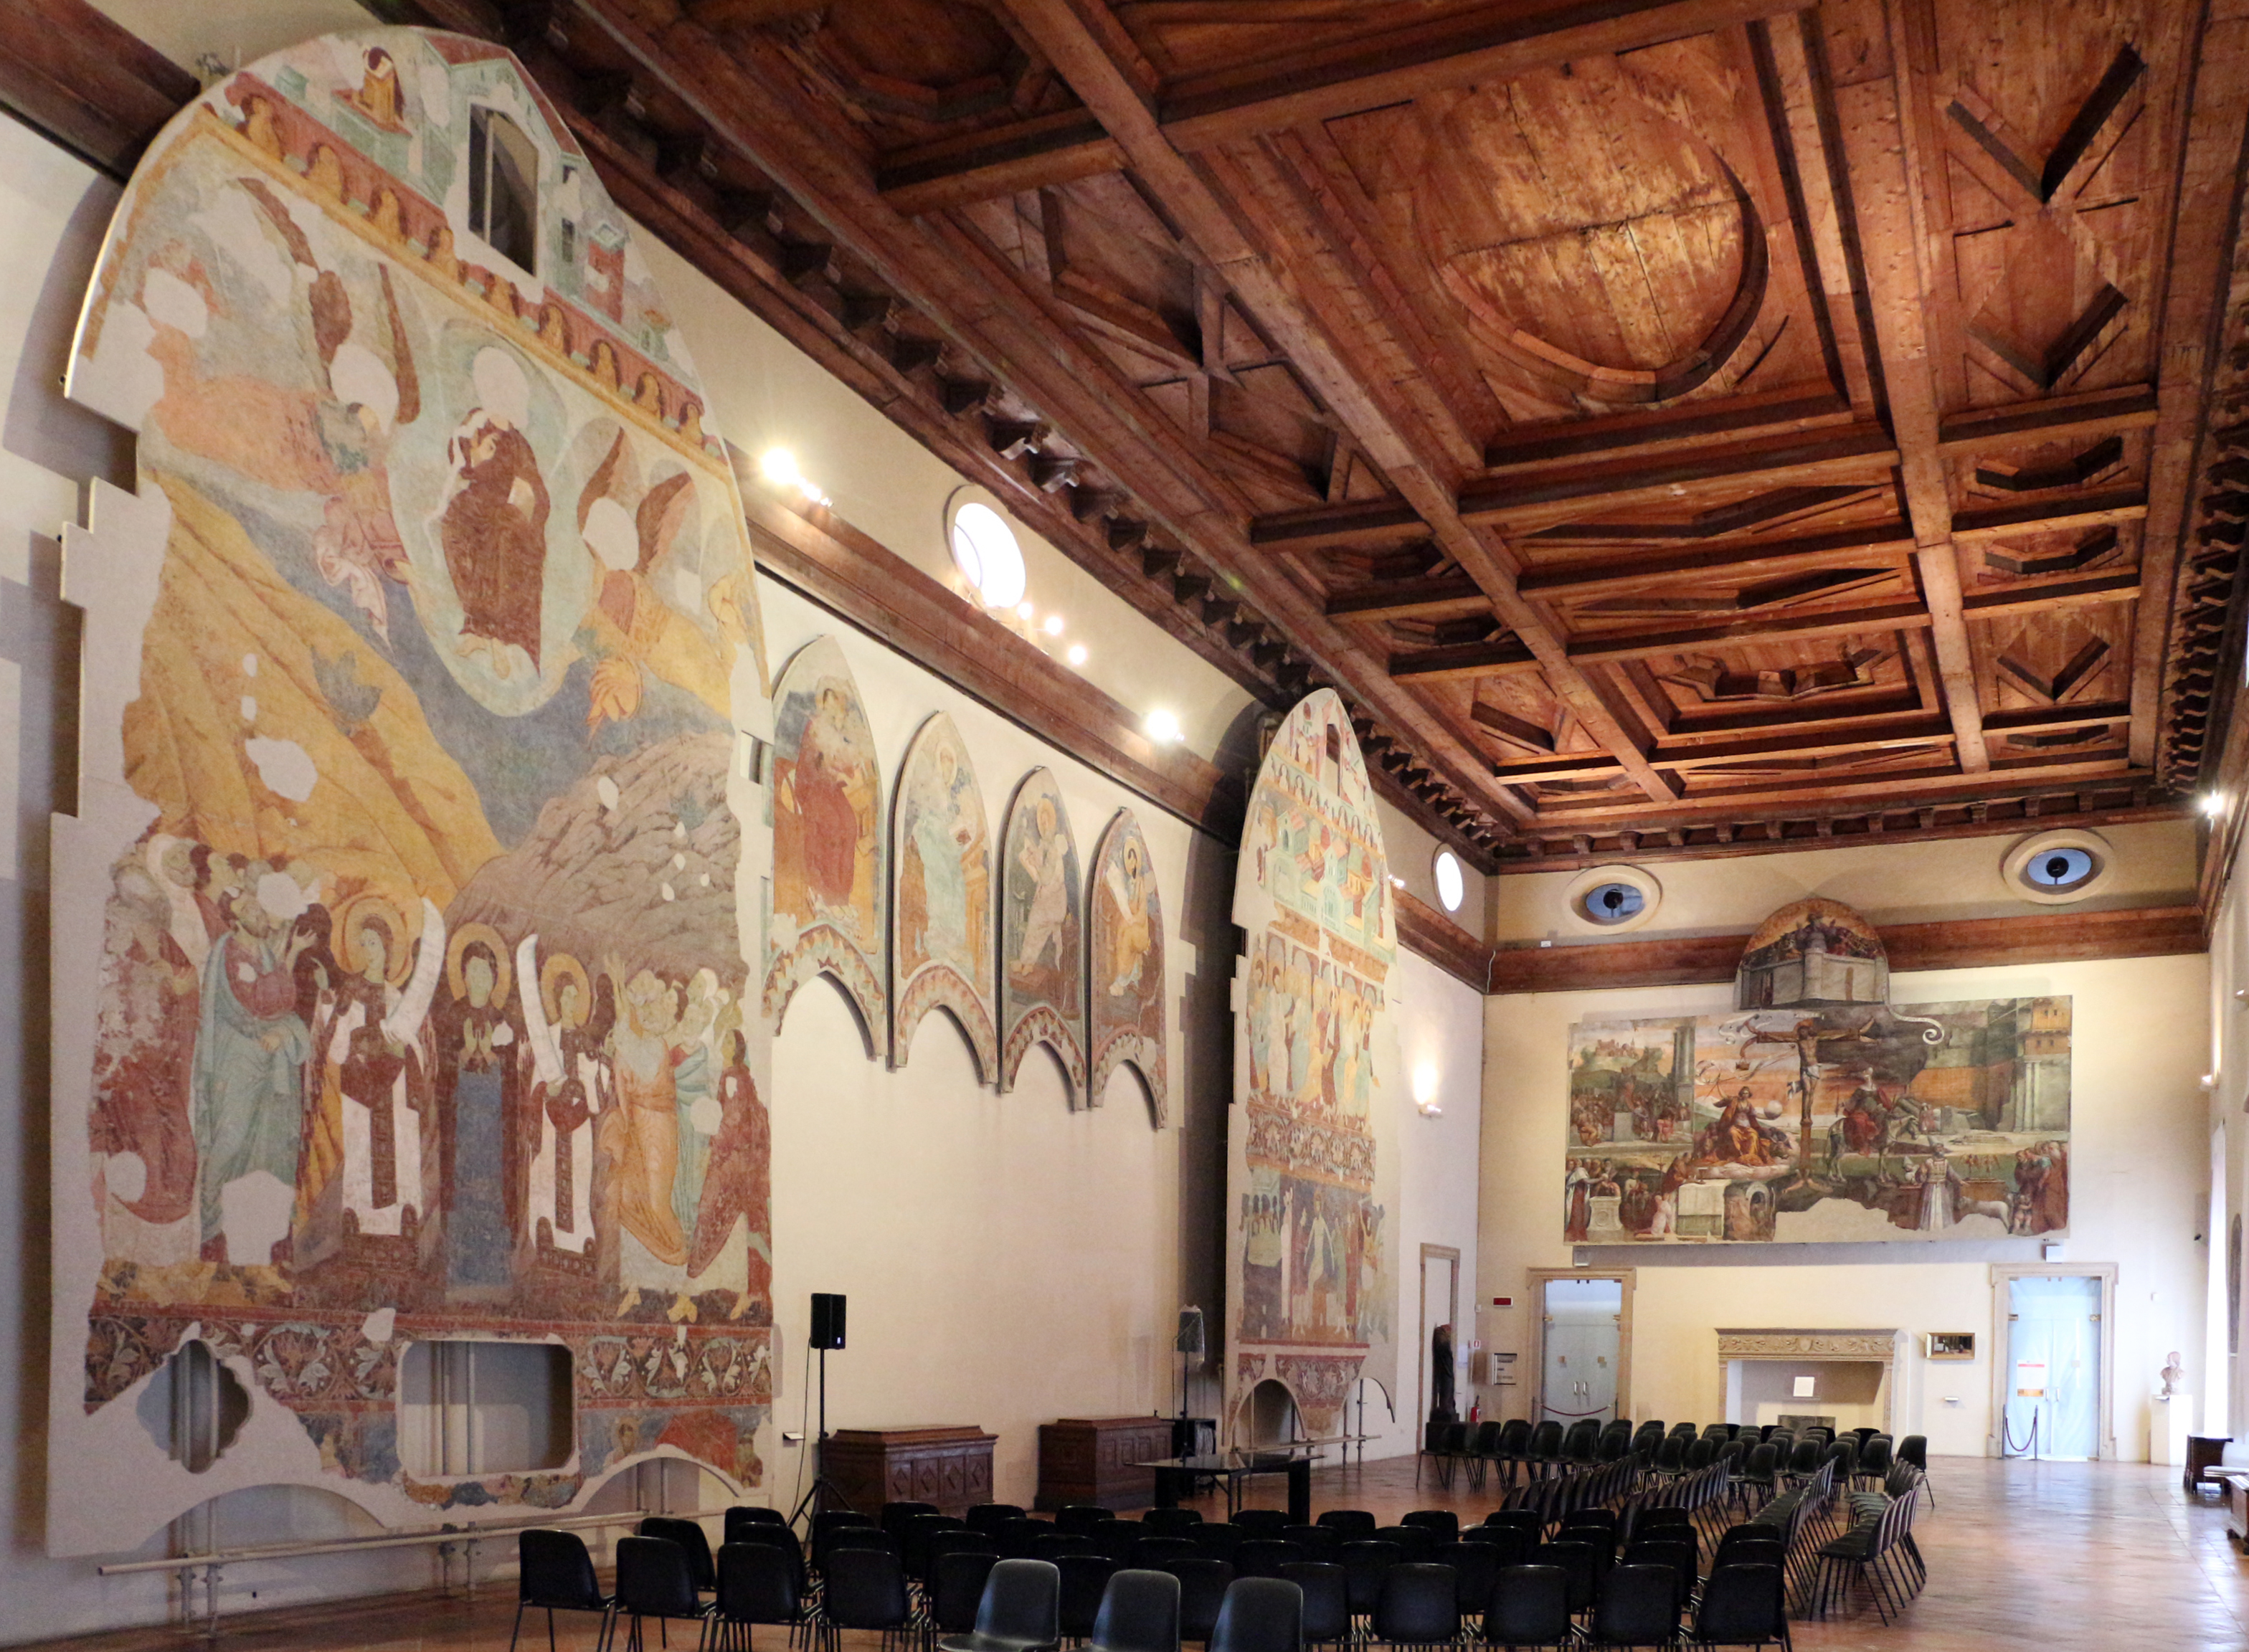 photo: https://upload.wikimedia.org/wikipedia/commons/3/3e/Pinacoteca_nazionale_di_ferrara%2C_salone_di_palazzo_dei_diamanti_01.jpg